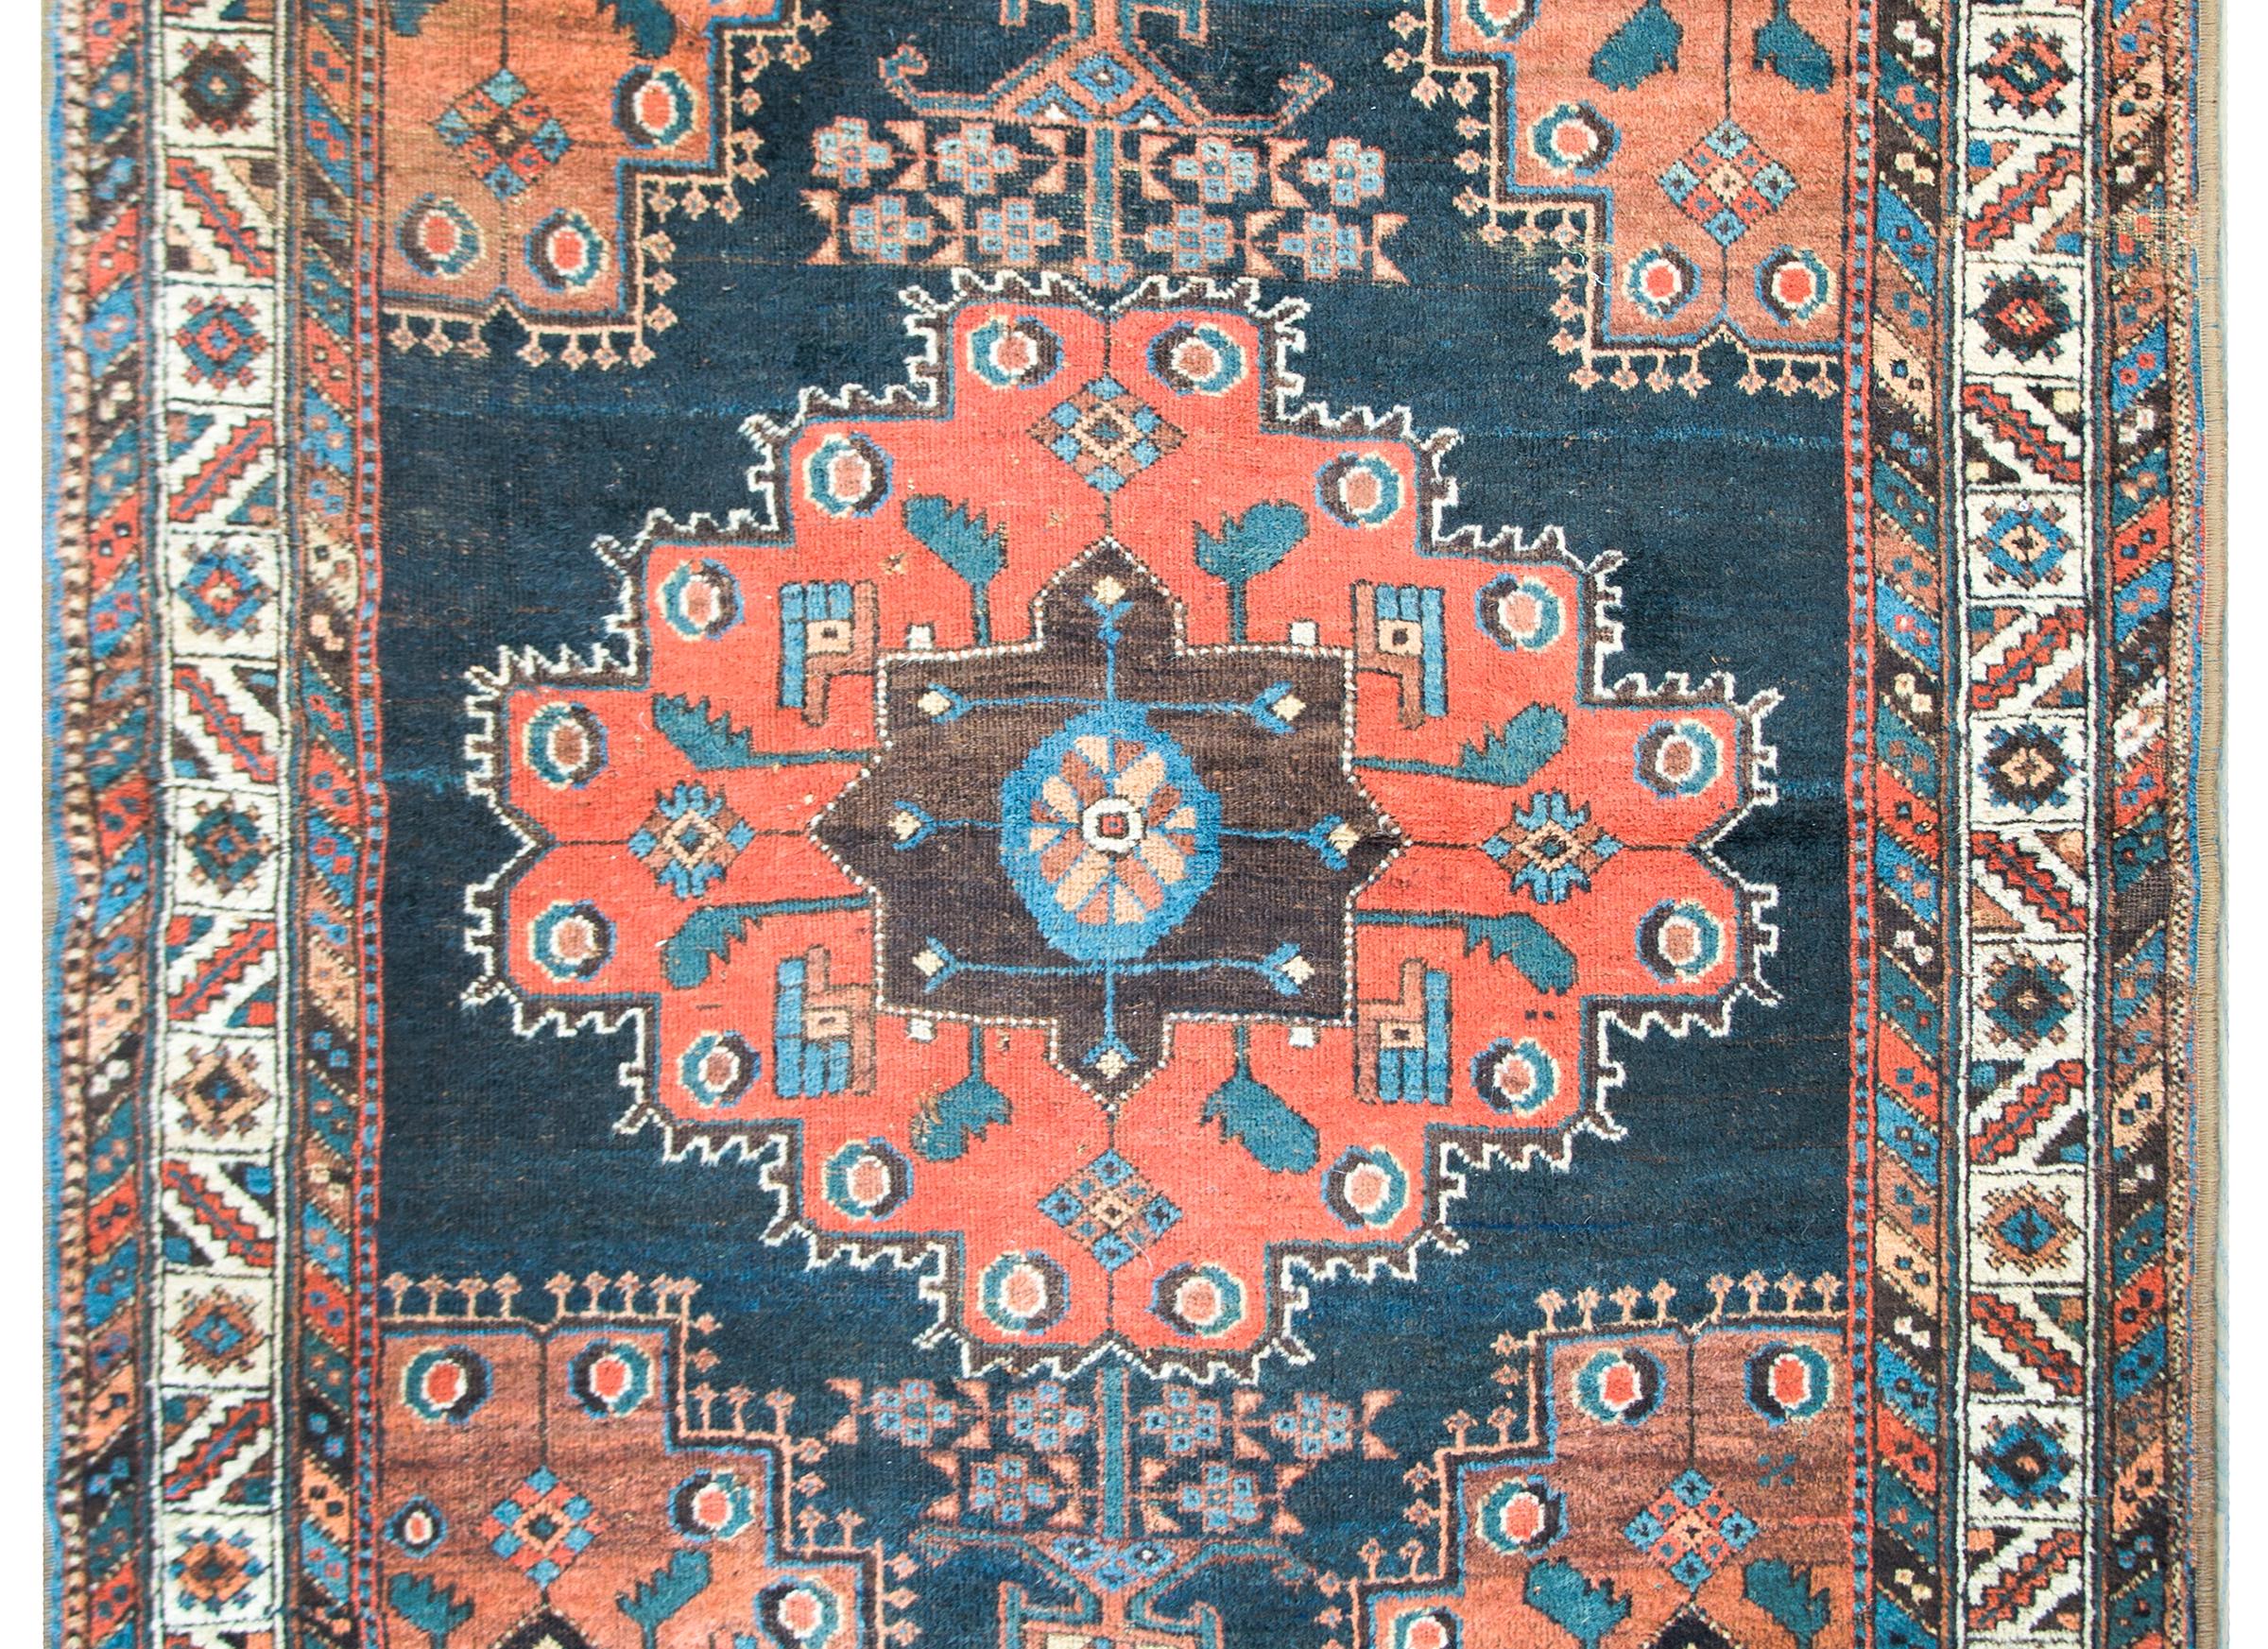 Remarquable tapis Persan Afshar du début du 20ème siècle avec un grand médaillon central avec les plus merveilleuses fleurs et feuilles stylisées, le tout tissé en laine de couleur indigo, orange, marron et corail, et entouré d'une magnifique